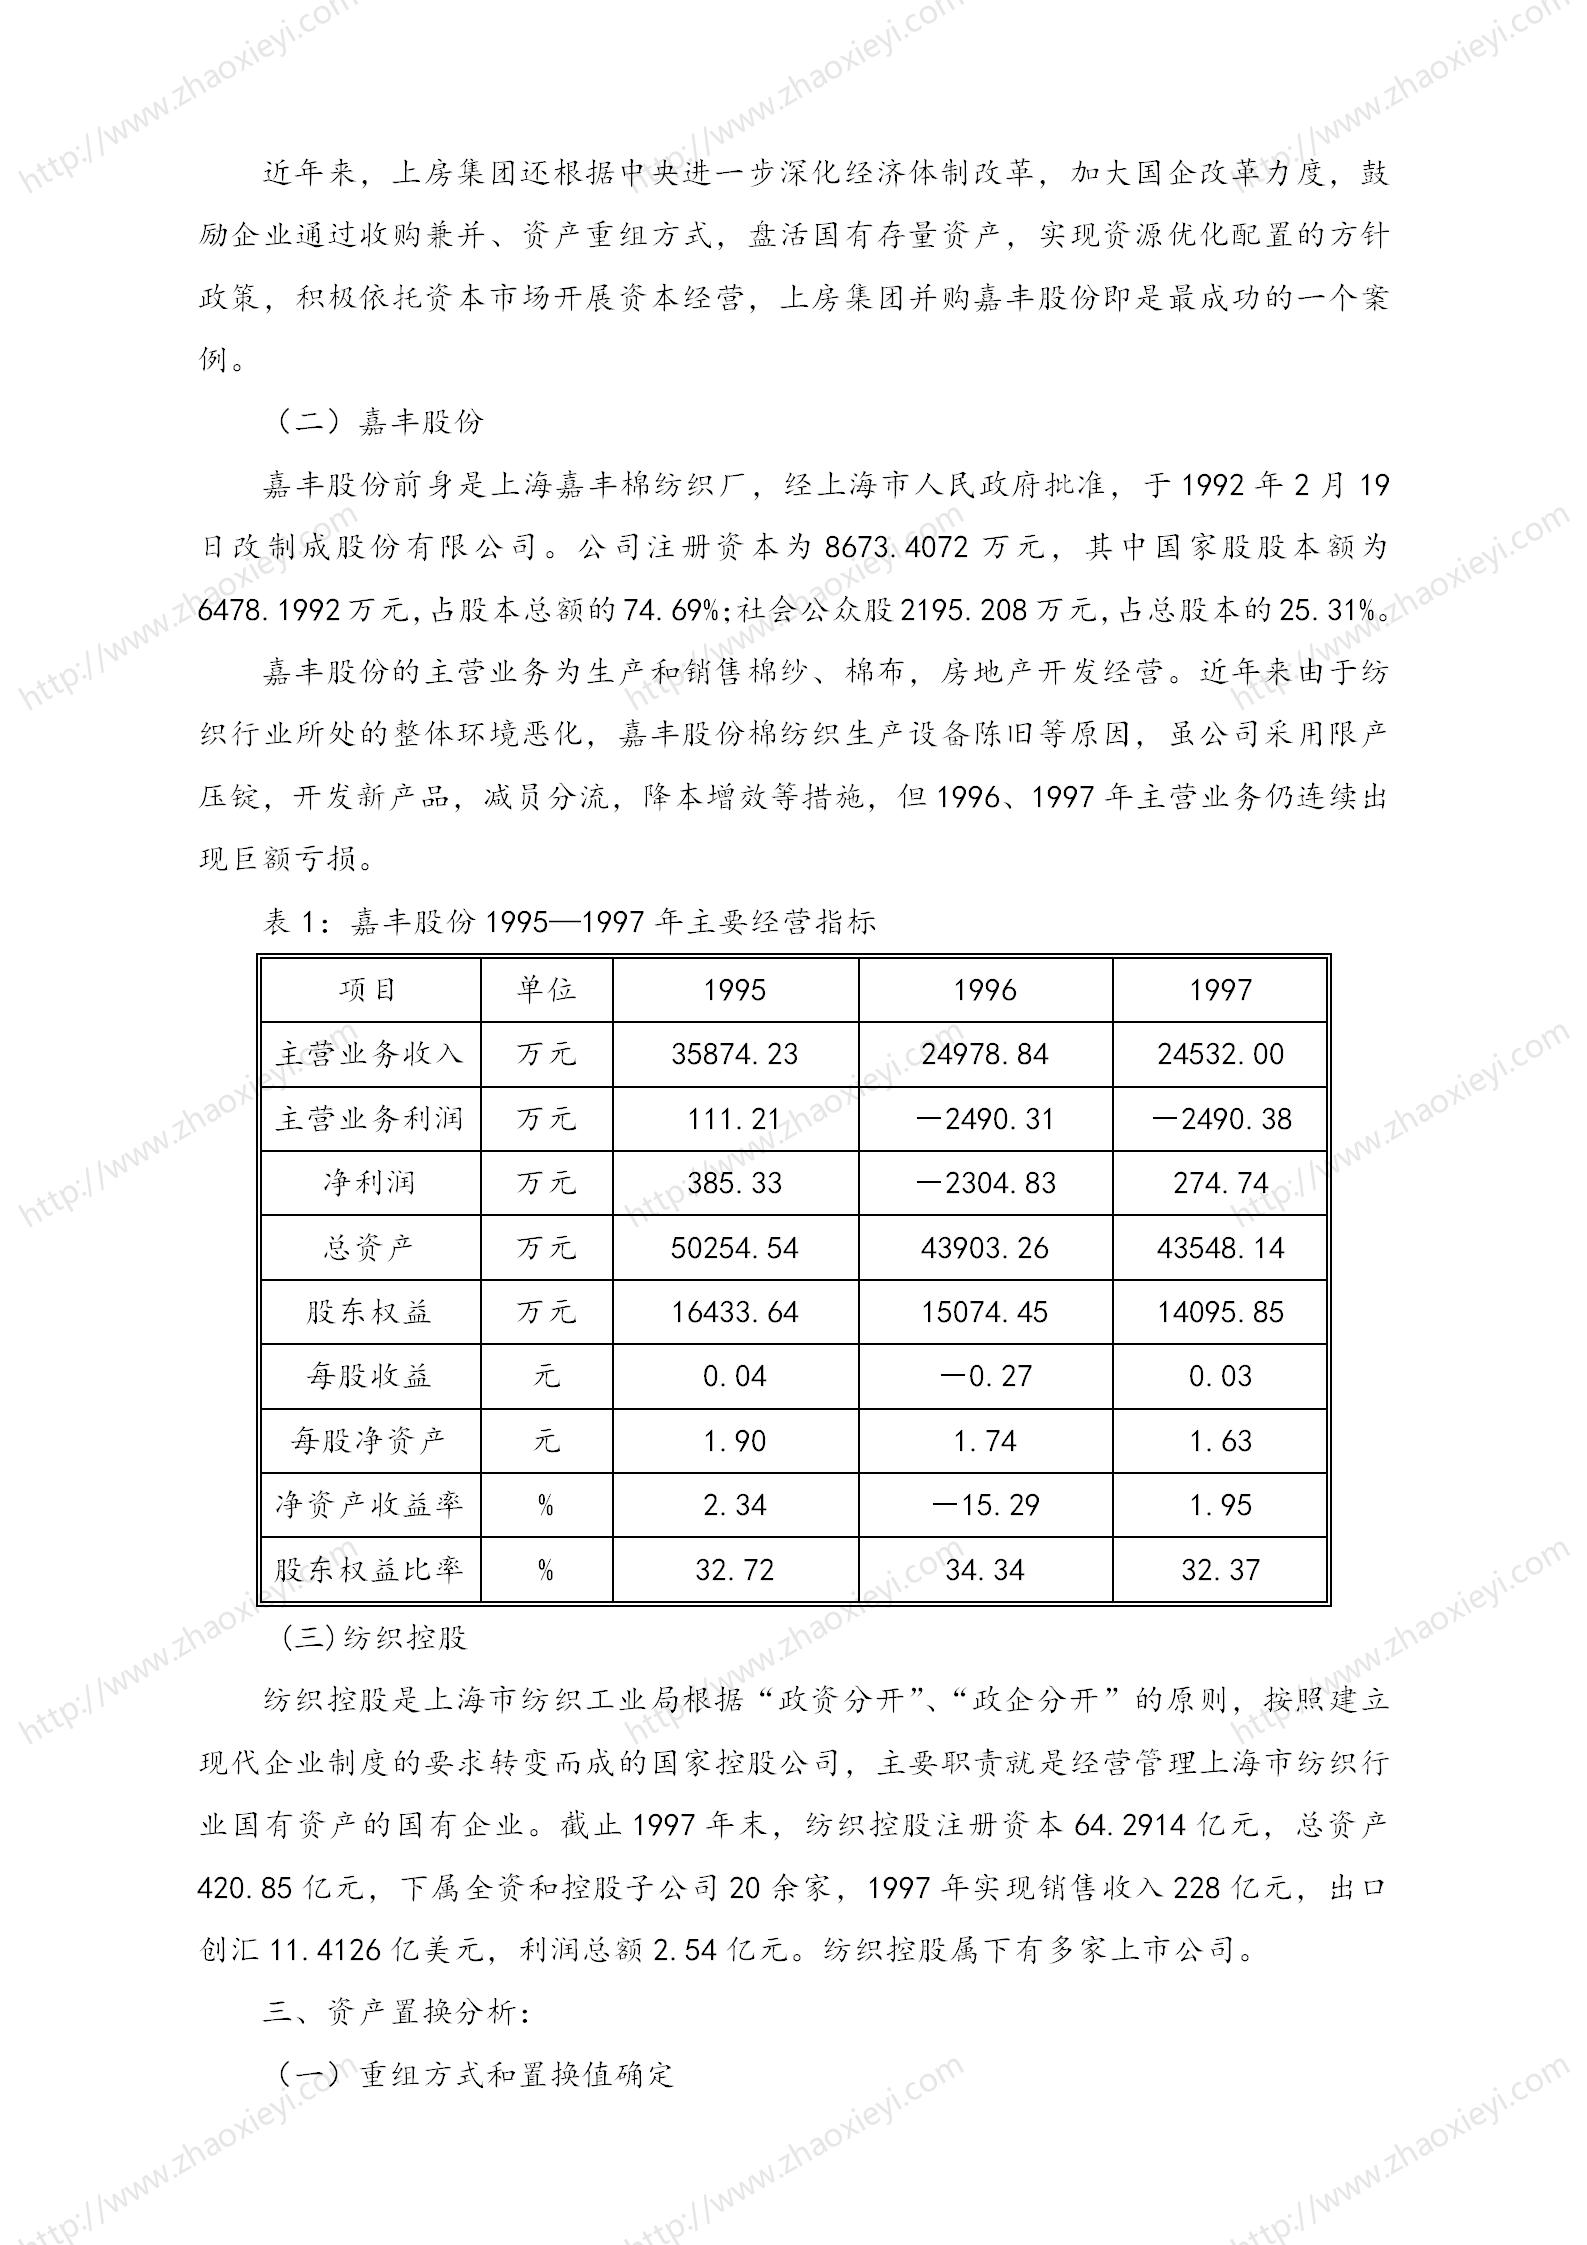 中国企业并购经典案例_106.jpg